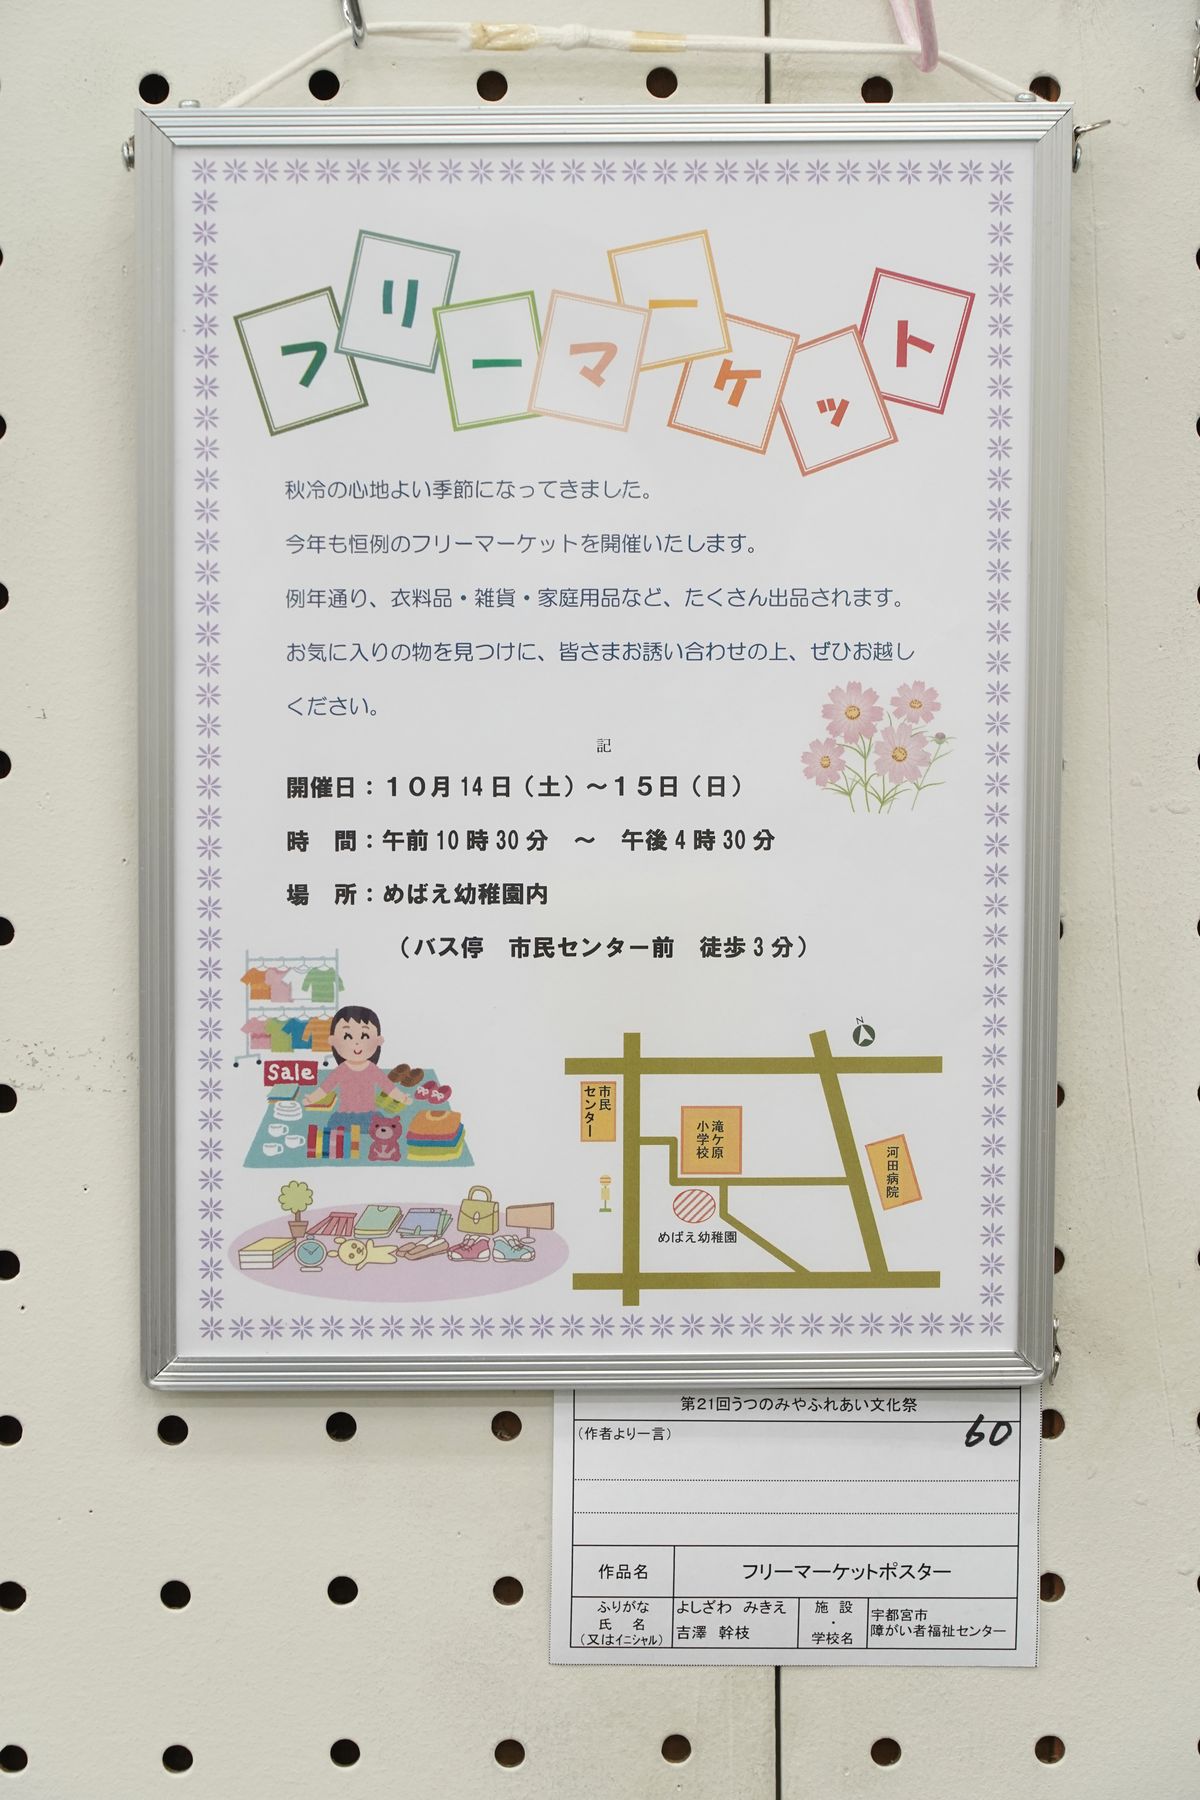 フリーマーケットポスター(吉澤 幹枝)